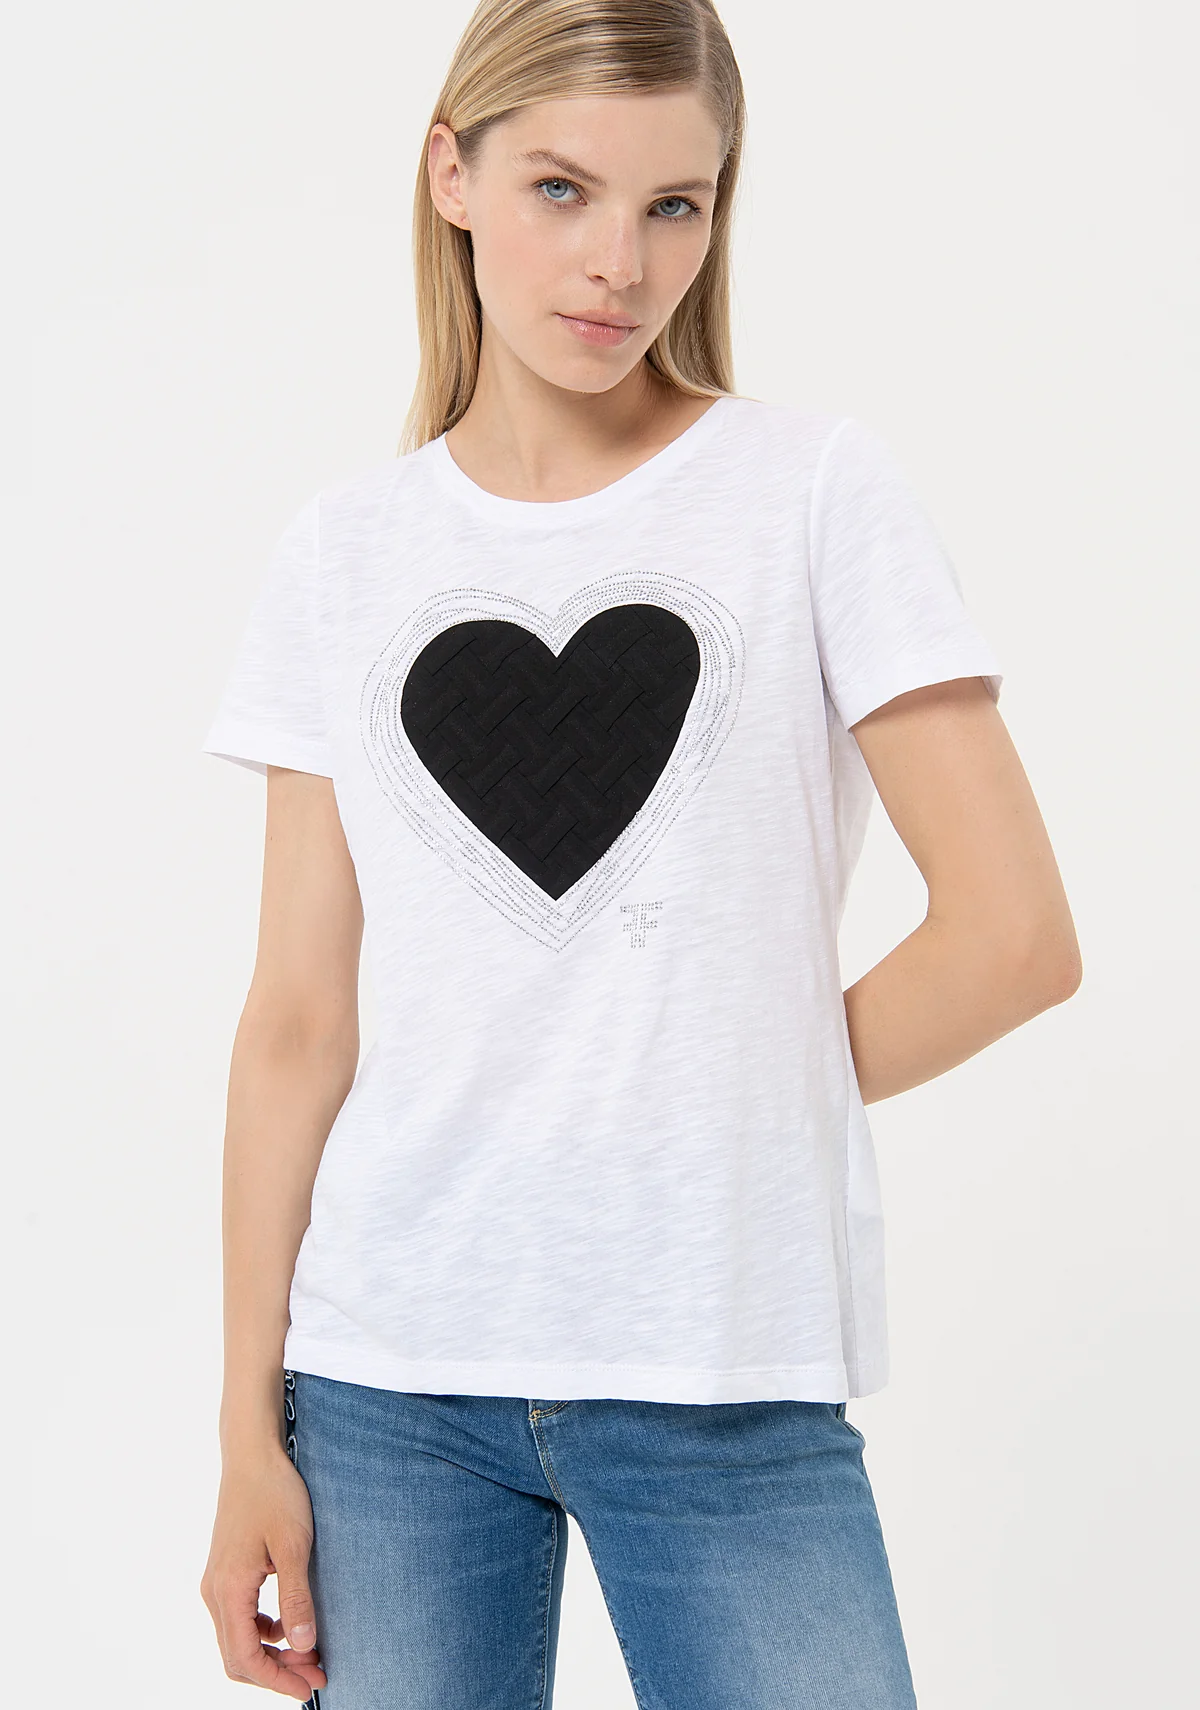 FRACOMINA camiseta manga corta blanca con corazón